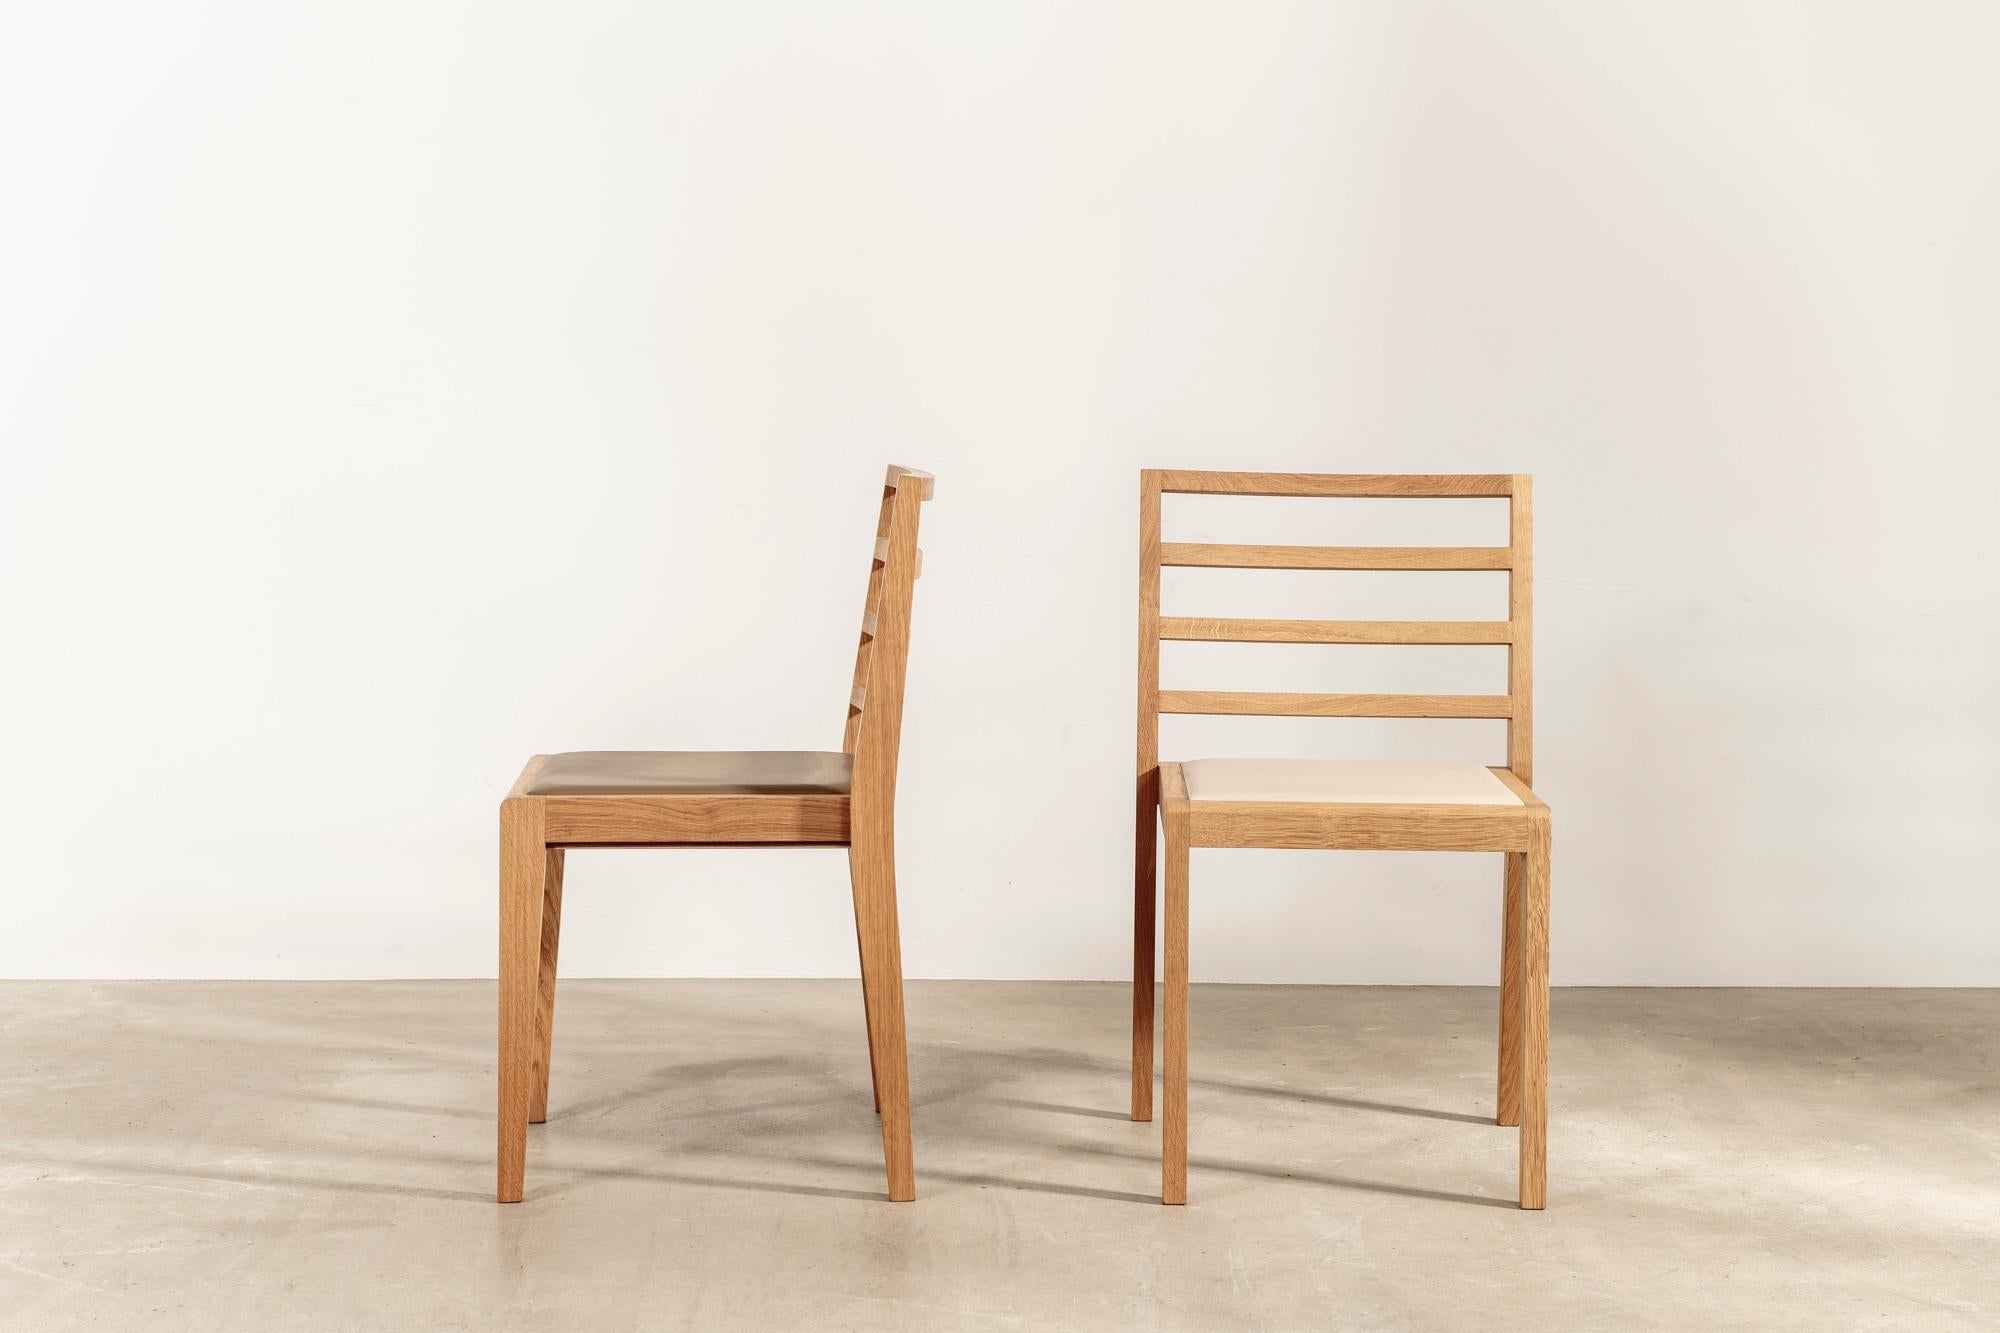 La discrète ist ein Tischlerstuhl, der auf den ersten Blick unauffällig wirkt, bei näherer Betrachtung aber eine ausgefeilte Handwerkskunst offenbart.

Die leichten und stapelbaren Stühle wurden vom englischen Edelmöbelhersteller Litton aus